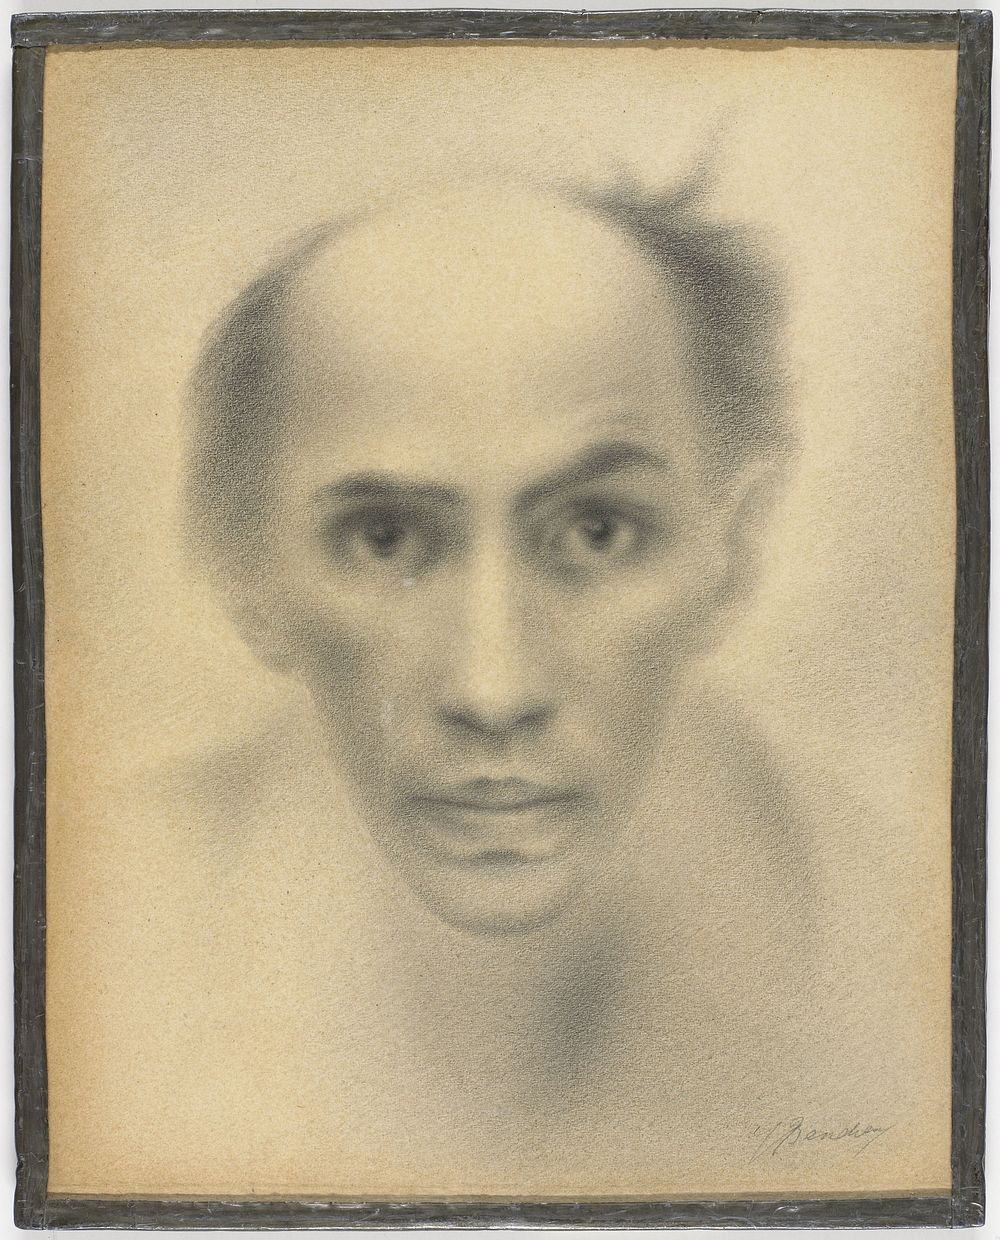 Zelfportret (c. 1930) by Jacob Bendien